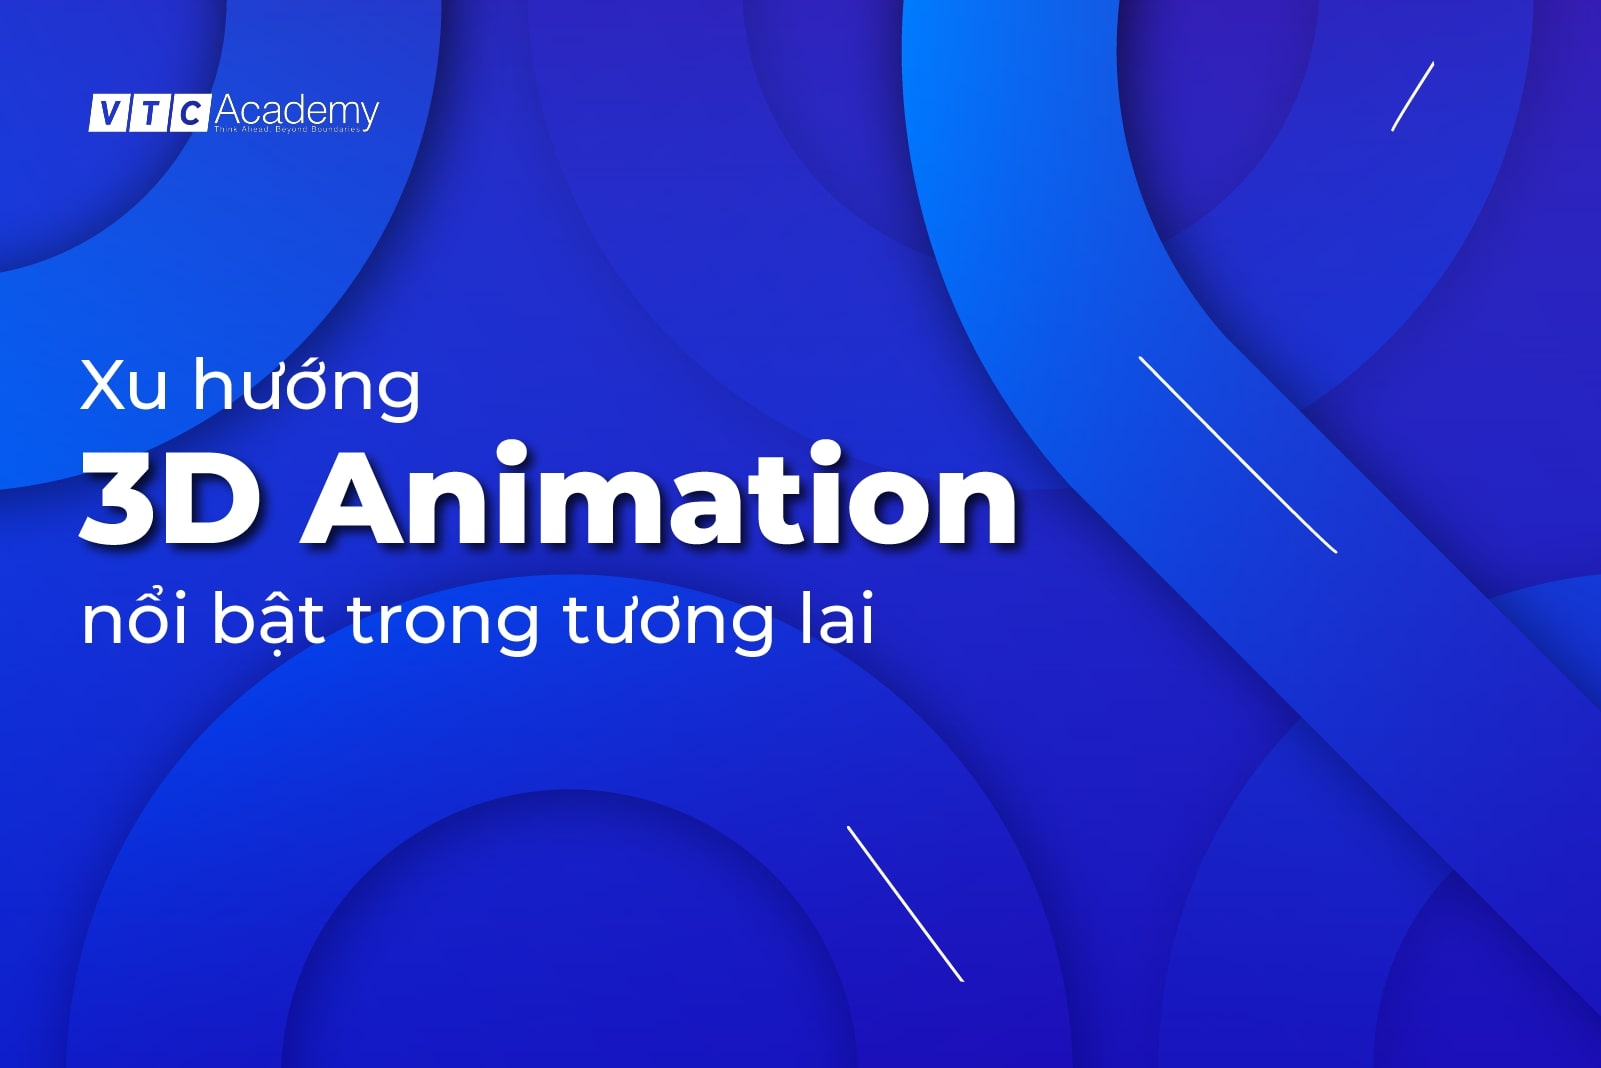 Những xu hướng nổi bật của ngành 3D Animation